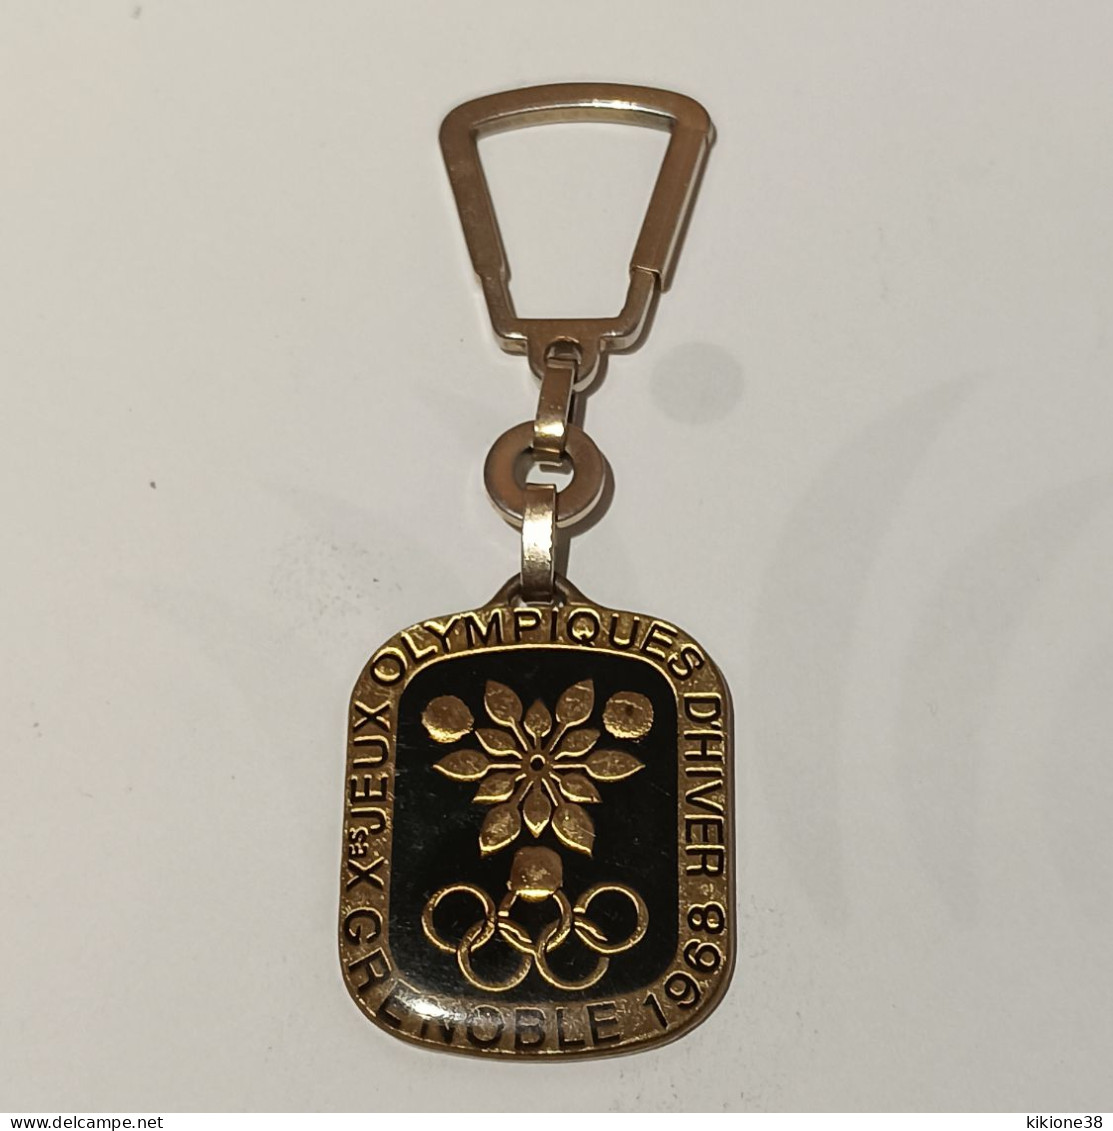 Très Rare Porte Clé Des Jeux Olympiques De Grenoble 68 Fond Noir Sous Résine. Objet Souvenir, Médaille, Badge, Pin's. - Bekleidung, Souvenirs Und Sonstige